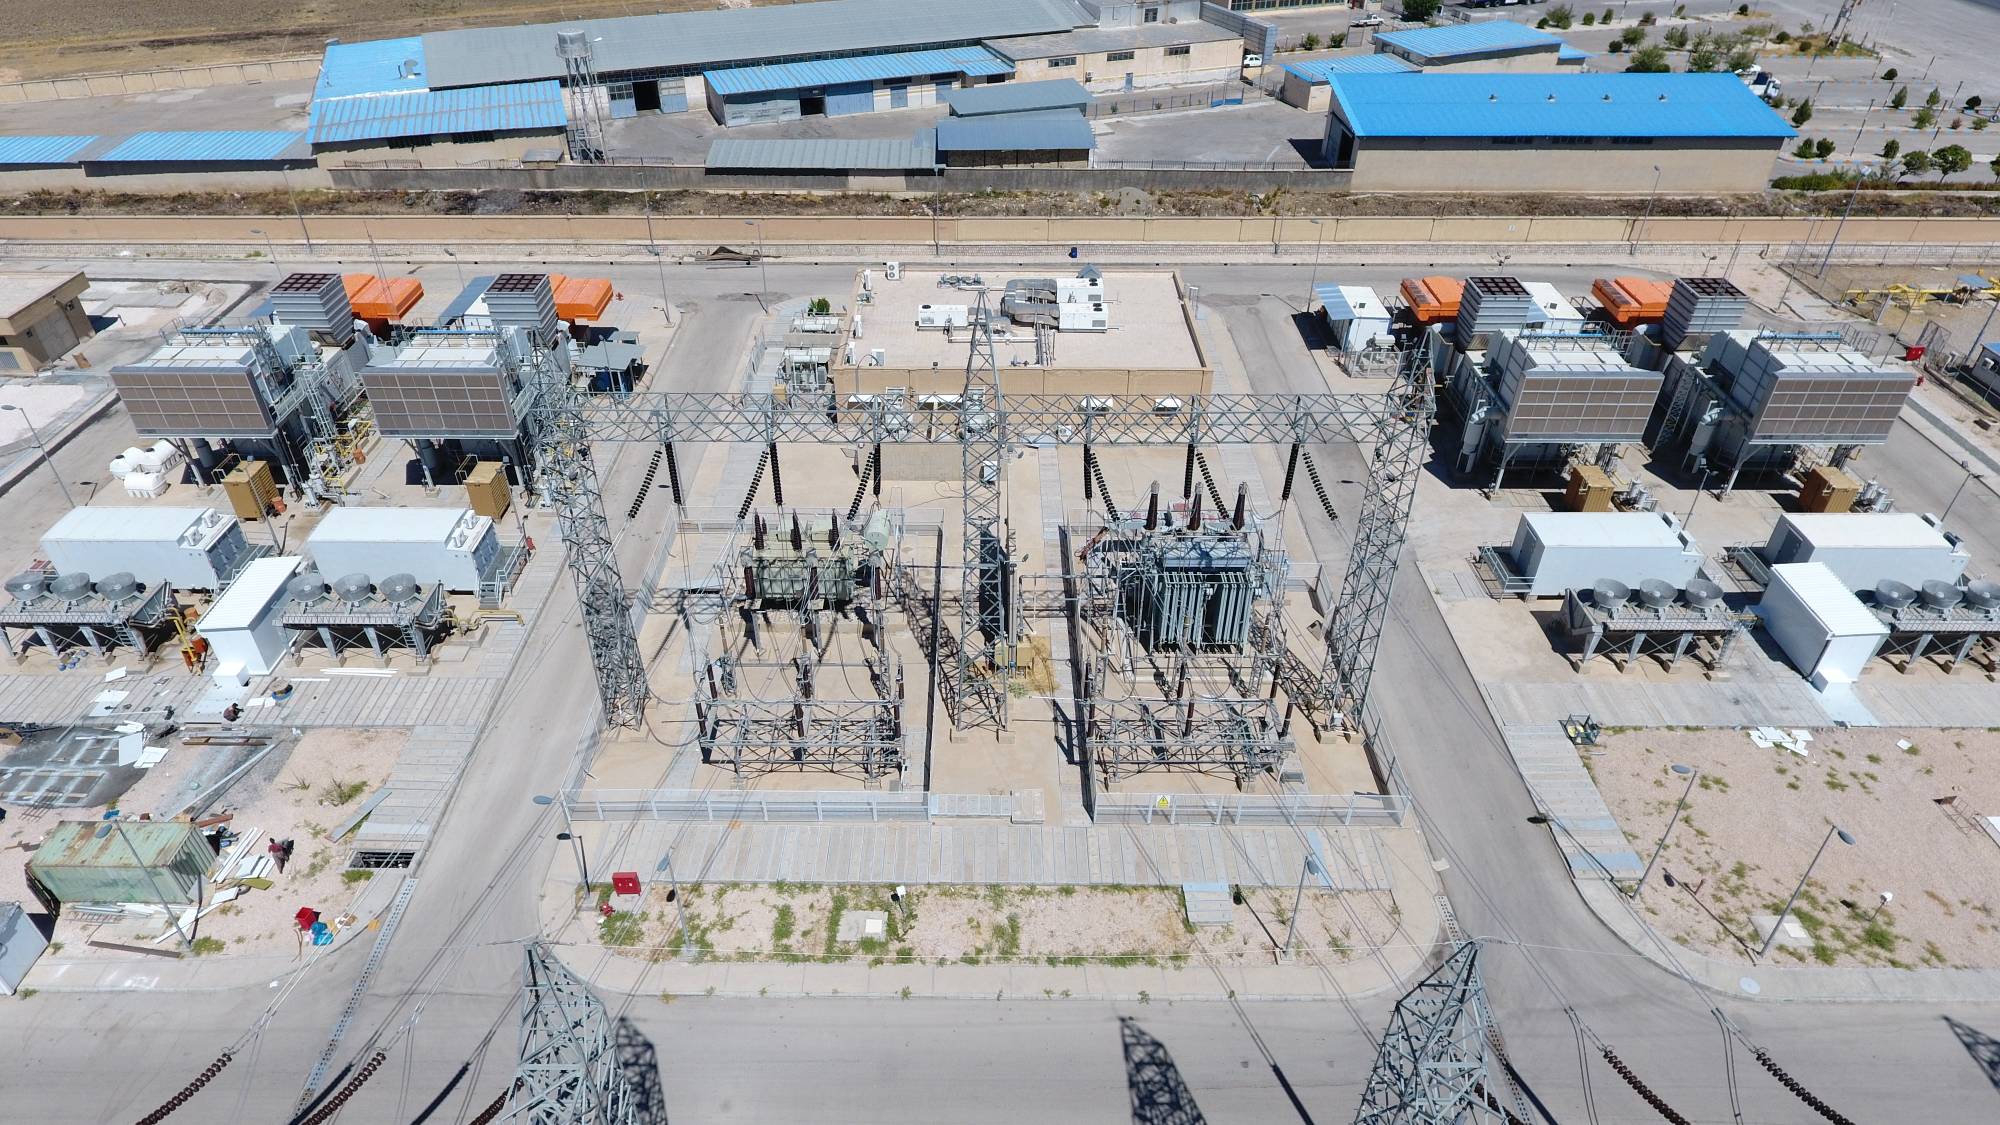 ۵۱۲ میلیون کیلو وات ساعت برق در نیروگاه اسلام آبادغرب